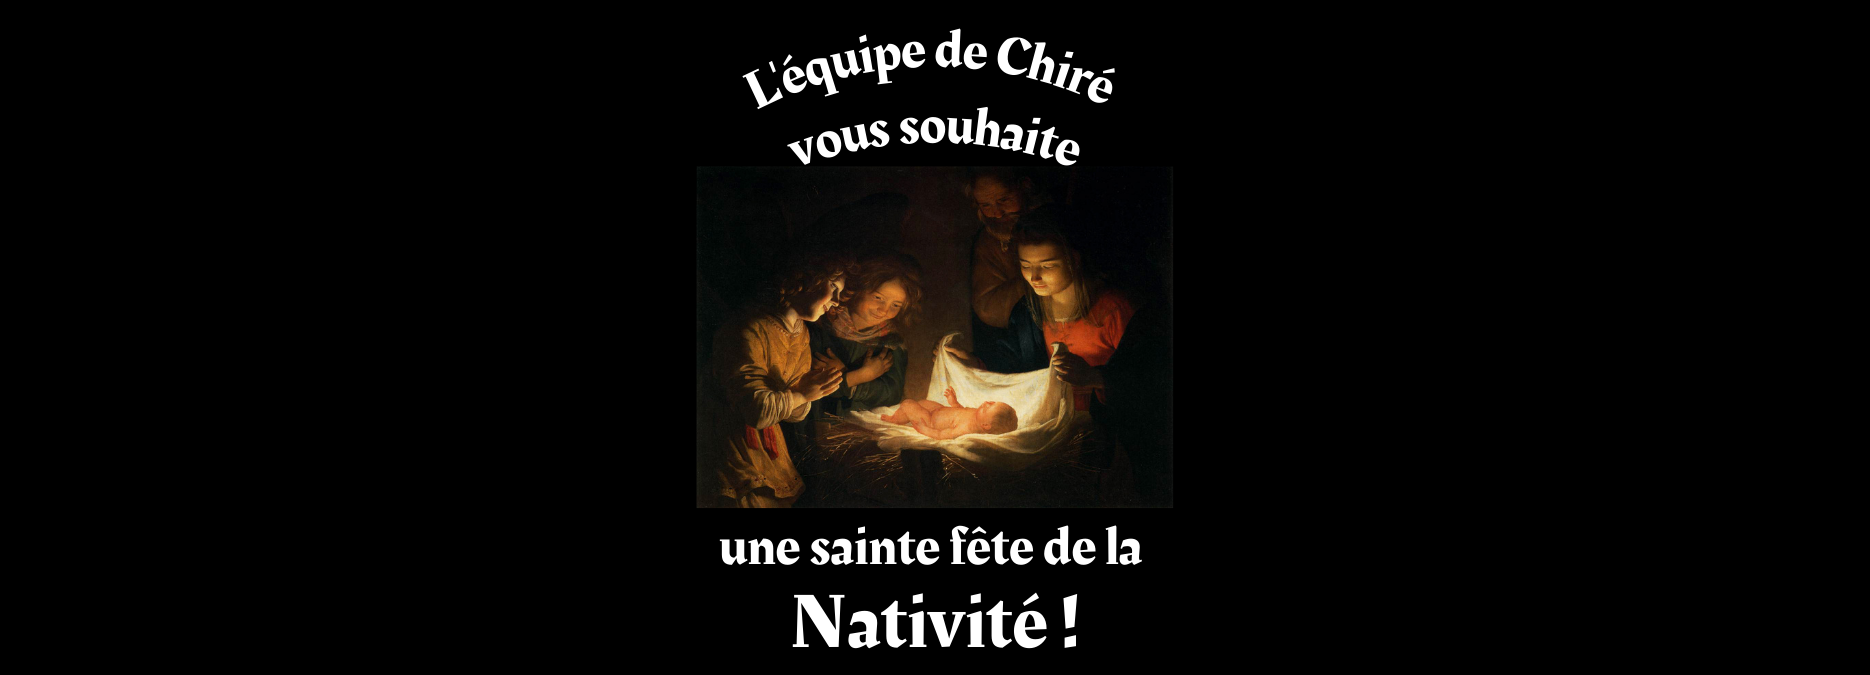 L'équipe de Chiré vous souhaite une sainte fête de la Nativité